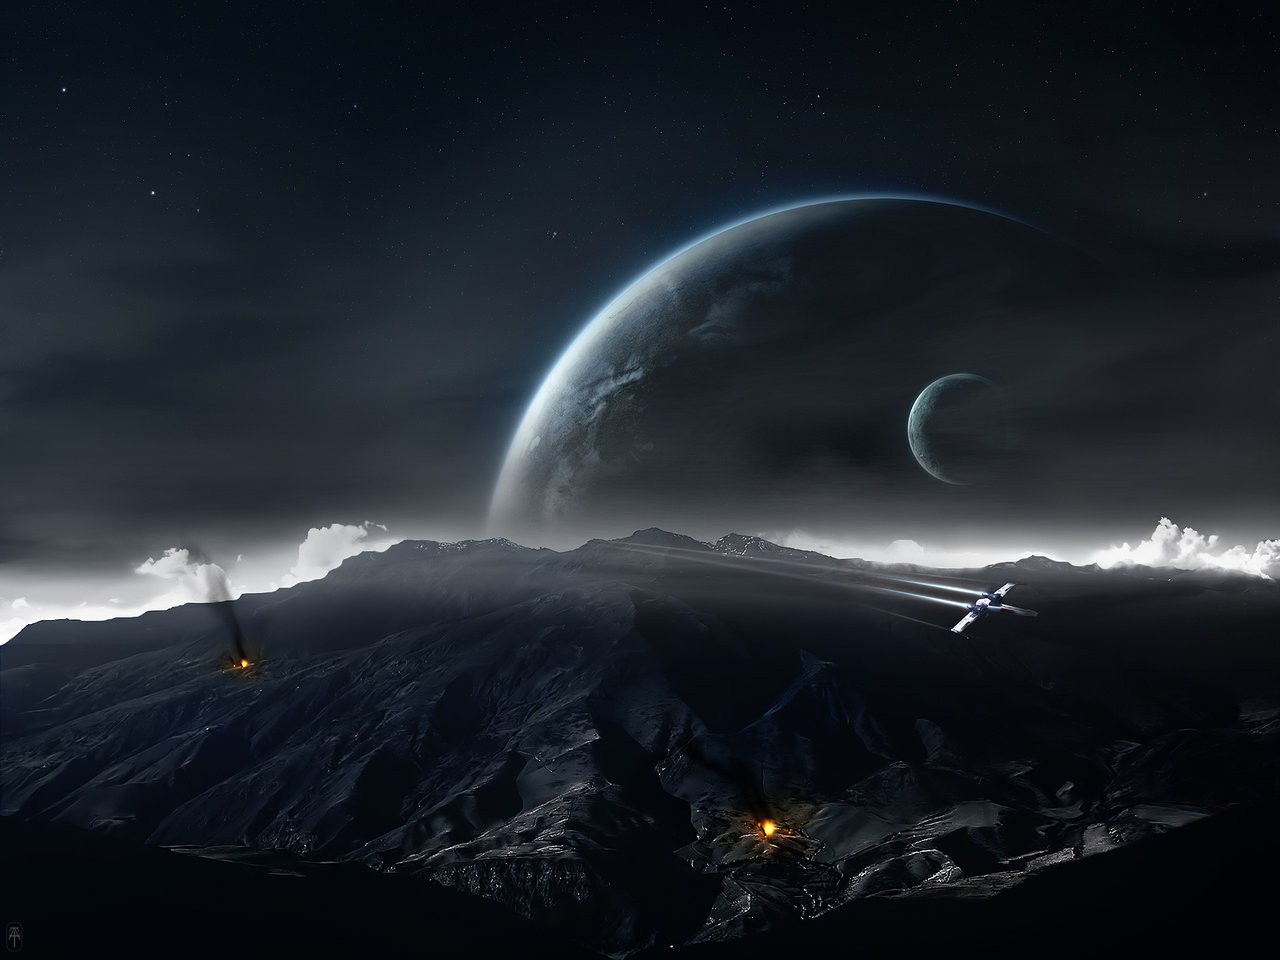 star wars planet wallpaper,himmel,atmosphäre,nacht,licht,astronomisches objekt